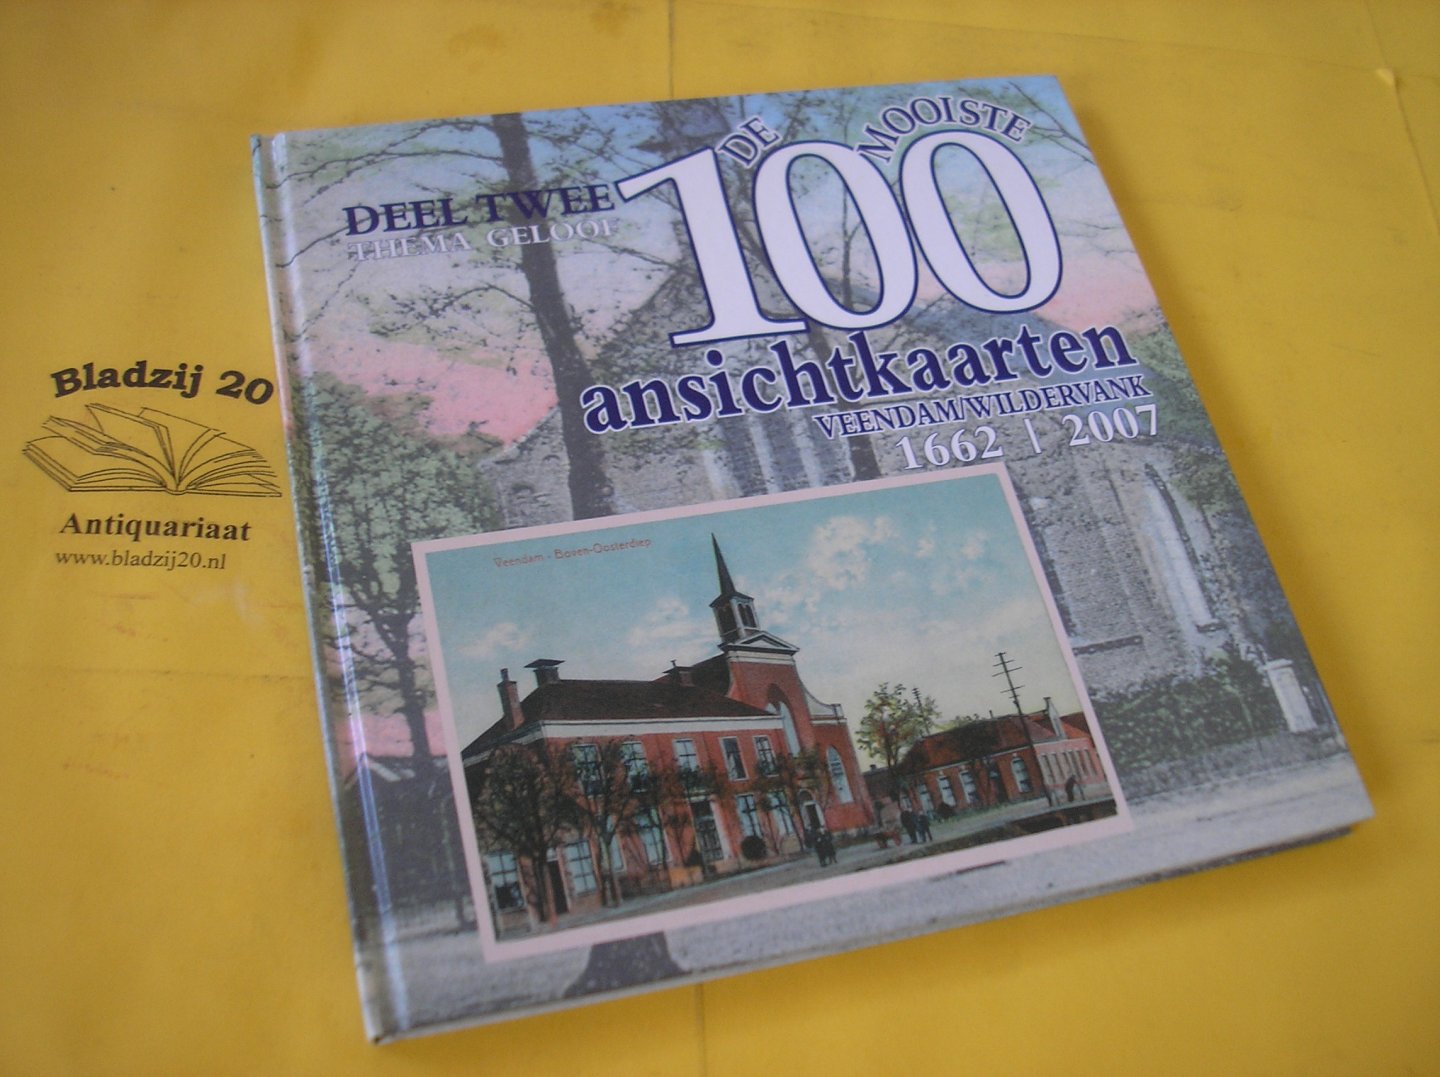 Oosting, Rink. - De mooiste 100 ansichtkaarten van de kerken in de gemeente Veendam.